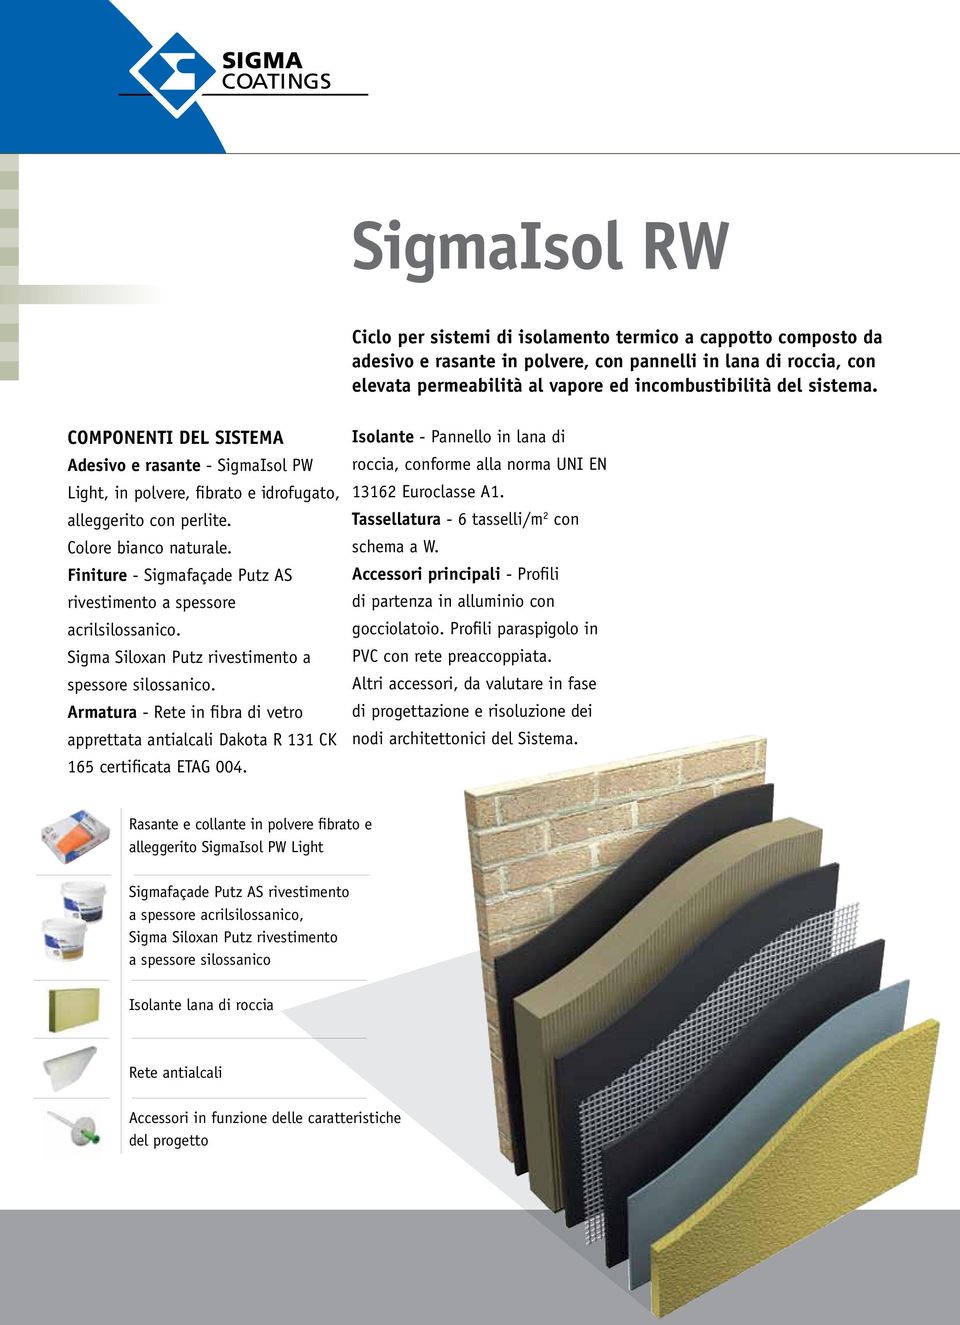 Finiture - Sigmafaçade Putz AS rivestimento a spessore acrilsilossanico. Sigma Siloxan Putz rivestimento a spessore silossanico.